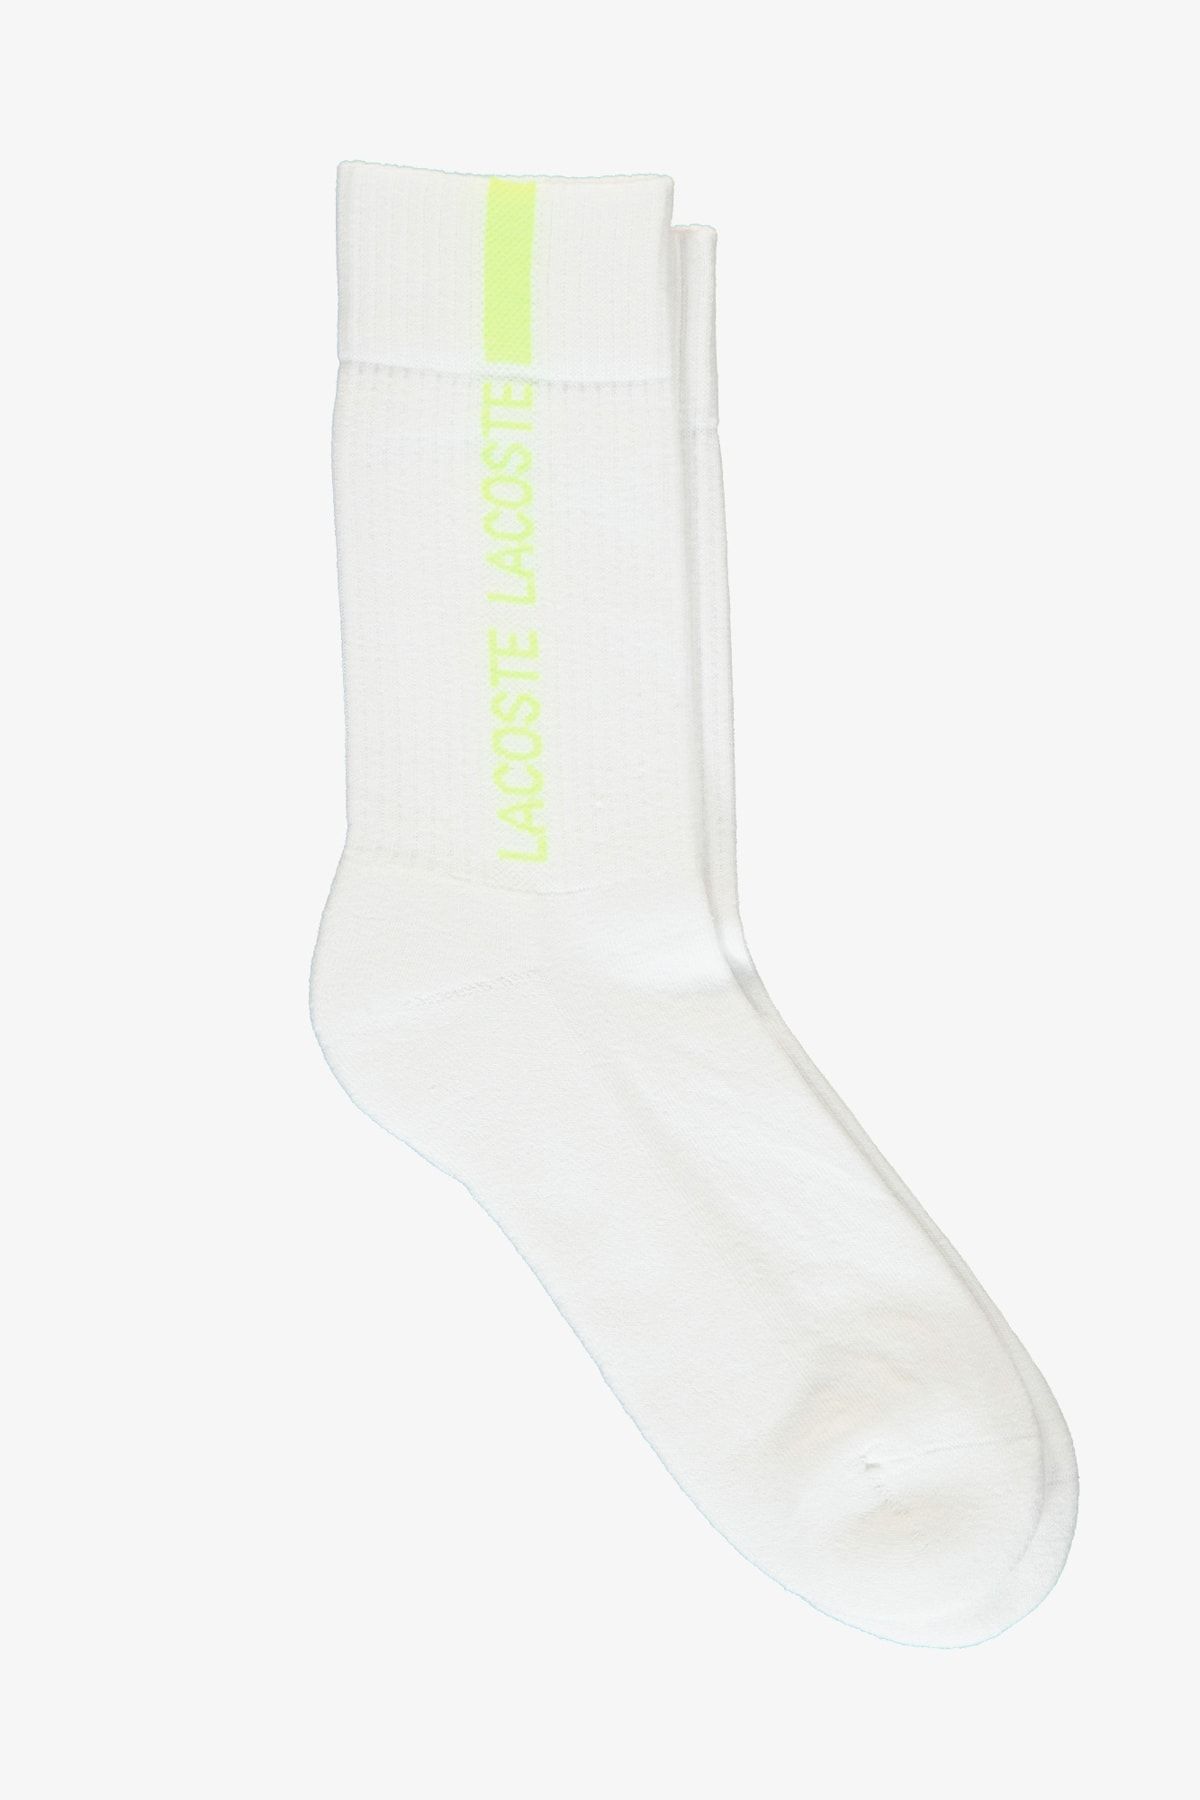 Lacoste Unisex Uzun Baskılı Beyaz Çorap RA2157